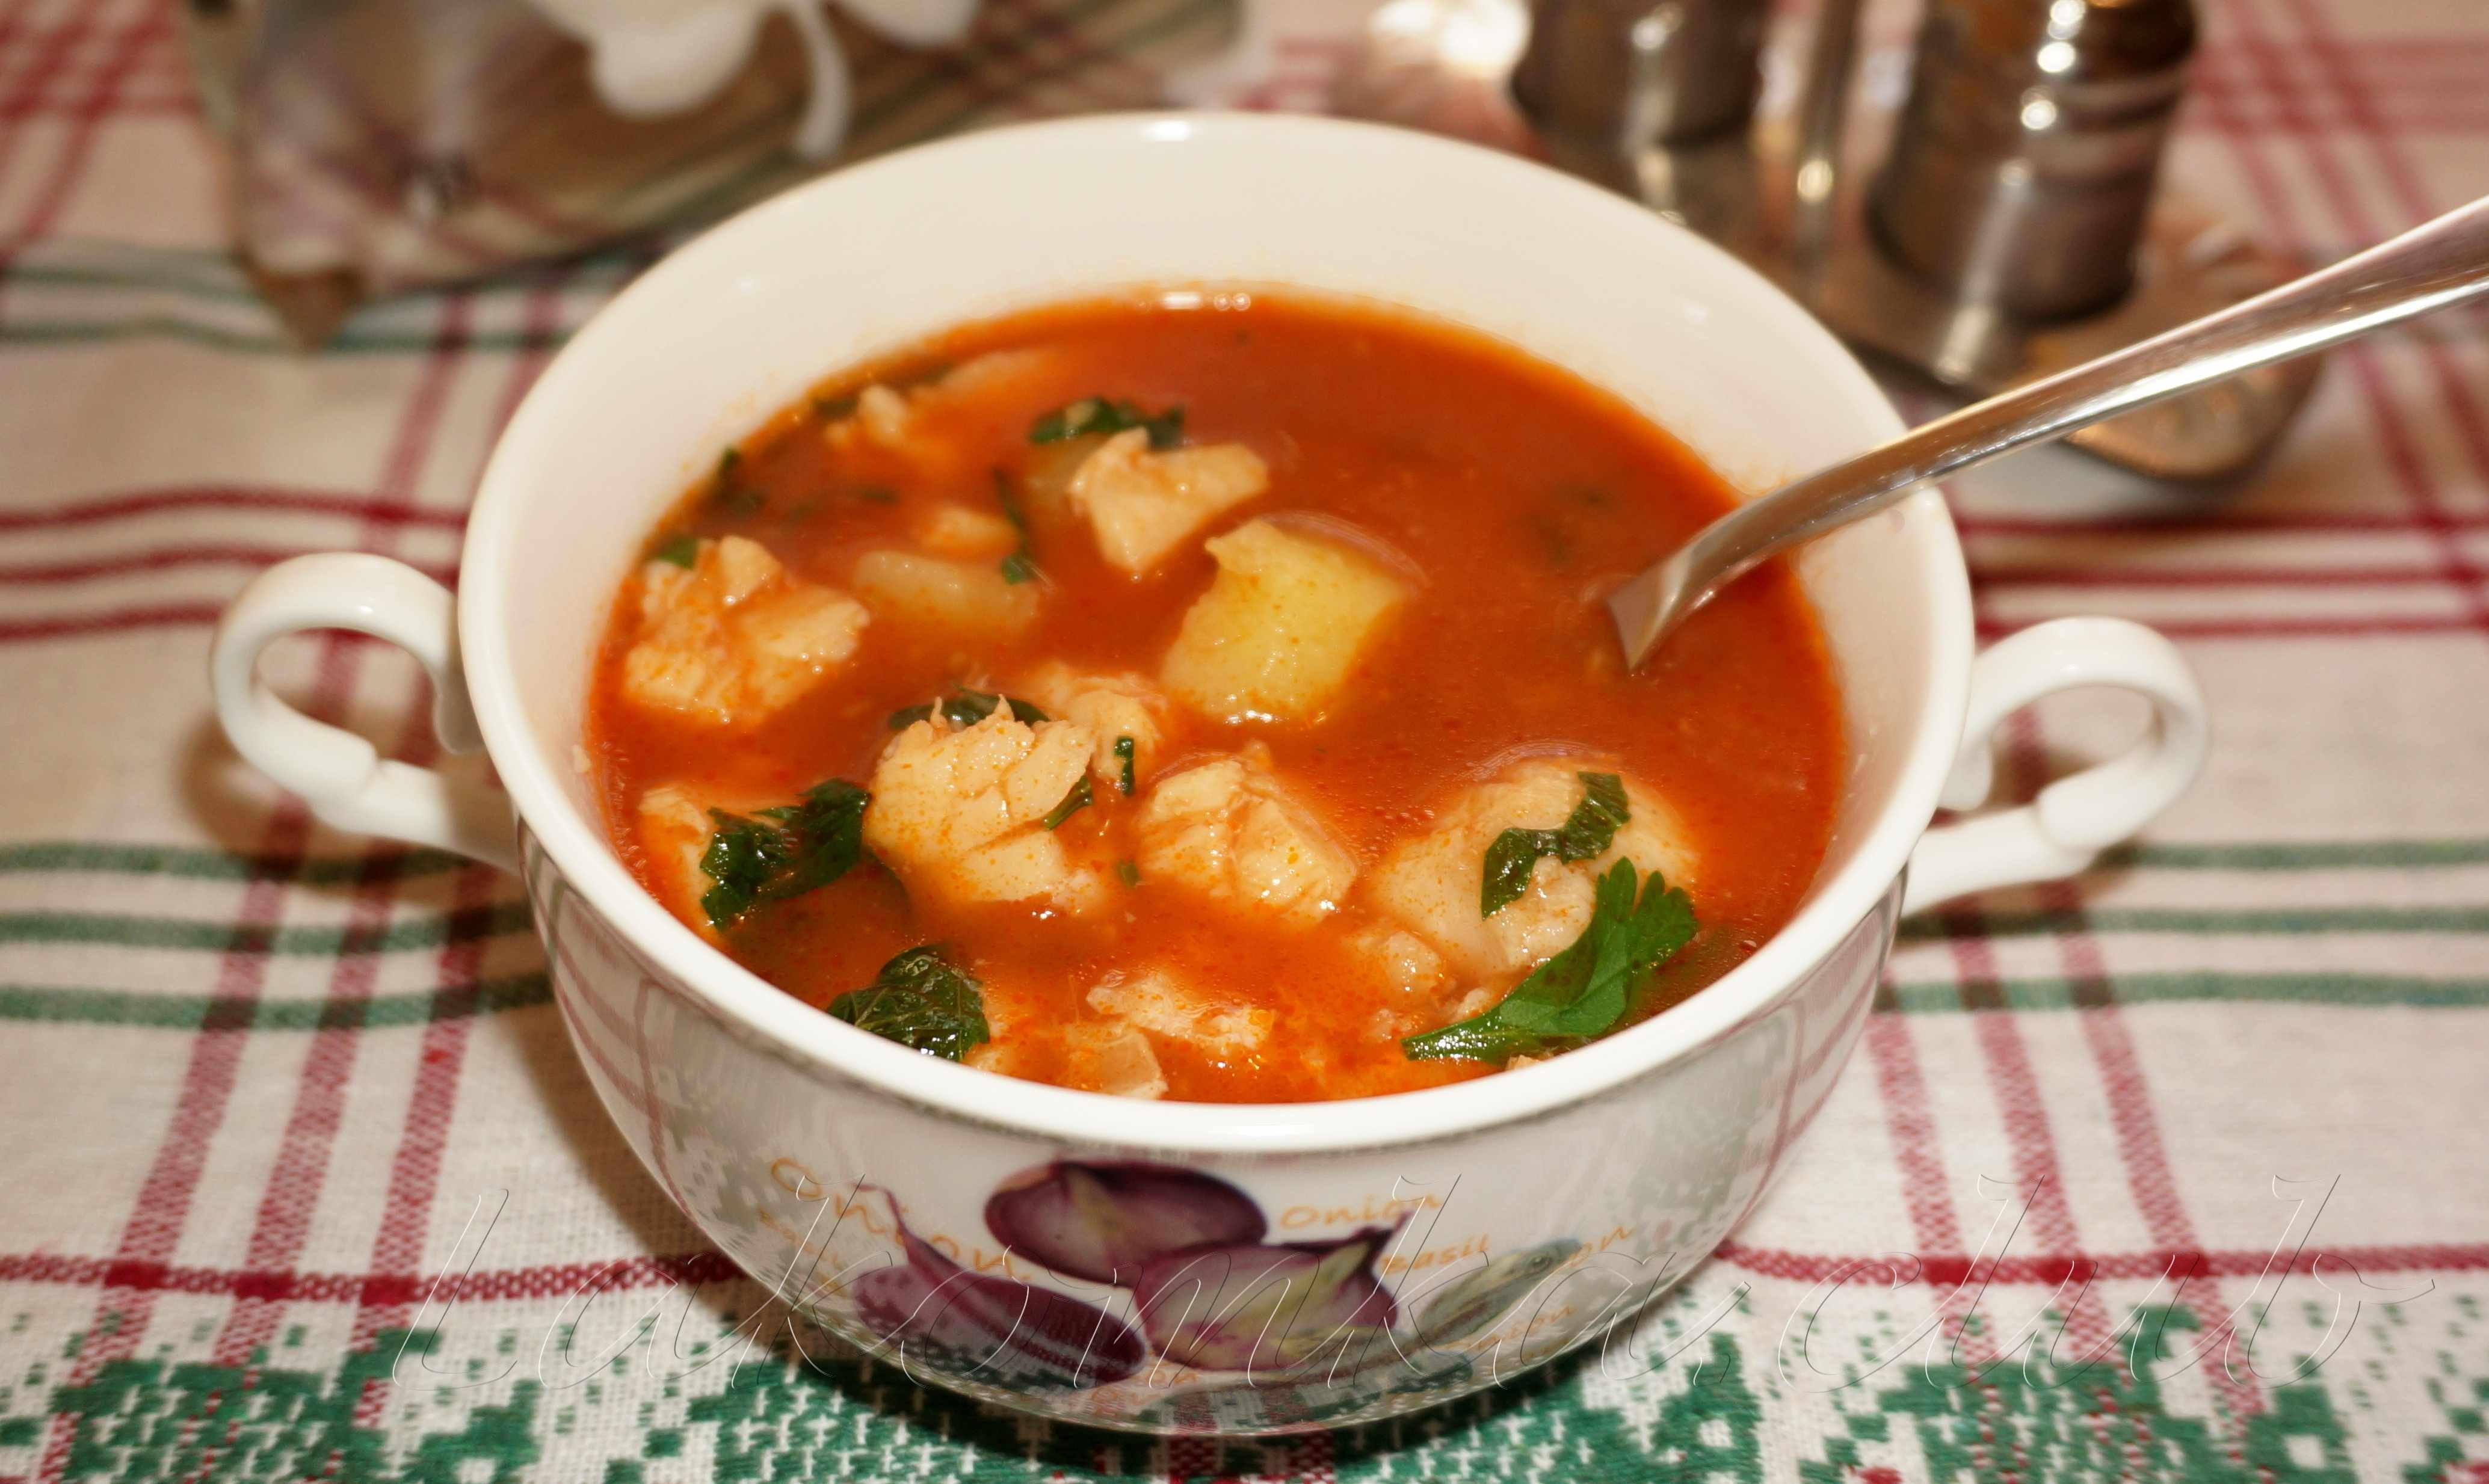 Суп из консервы рыбной в томате. Суп с килькой. Томатный суп с рыбой. Окрошка с килькой в томатном соусе. Рыбный суп из консервов с рыбой в томатном соусе.